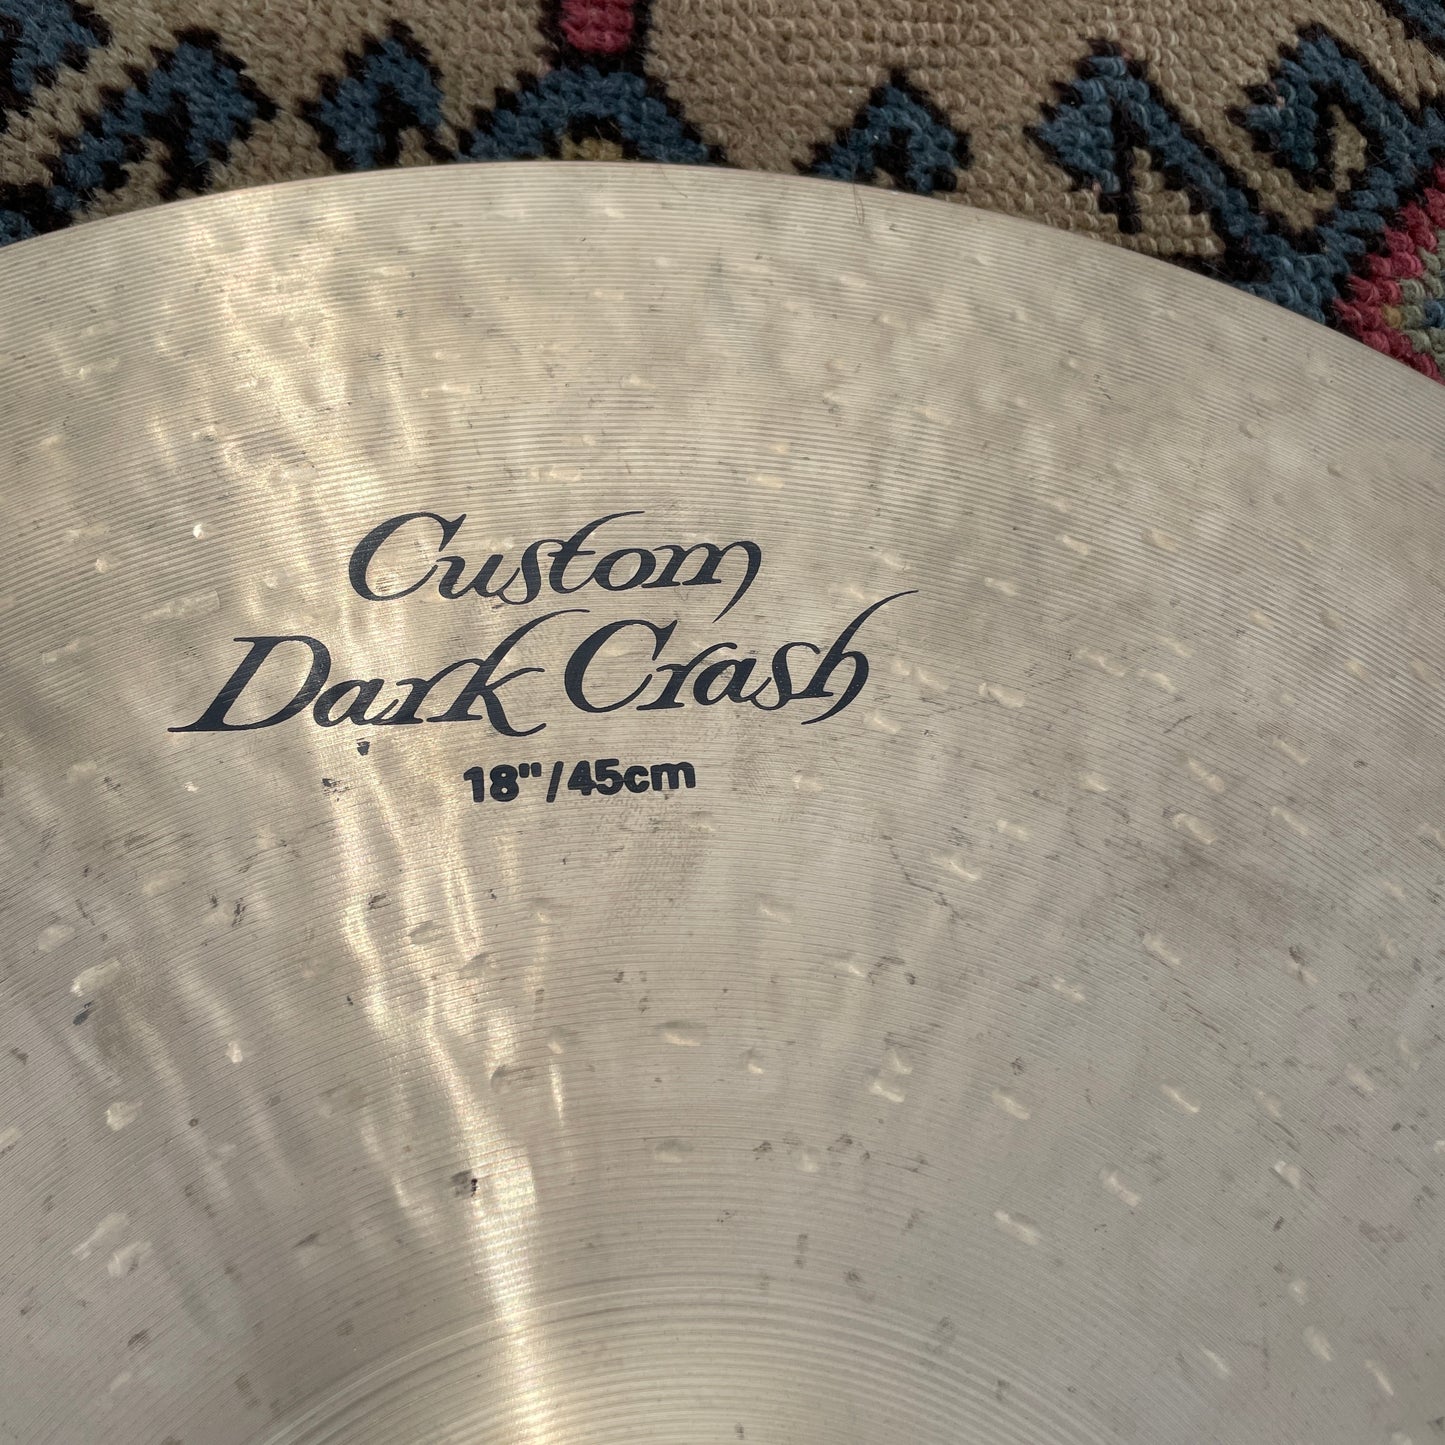 18" Zildjian K Custom Dark Crash Cymbal 1368g *Video Demo*